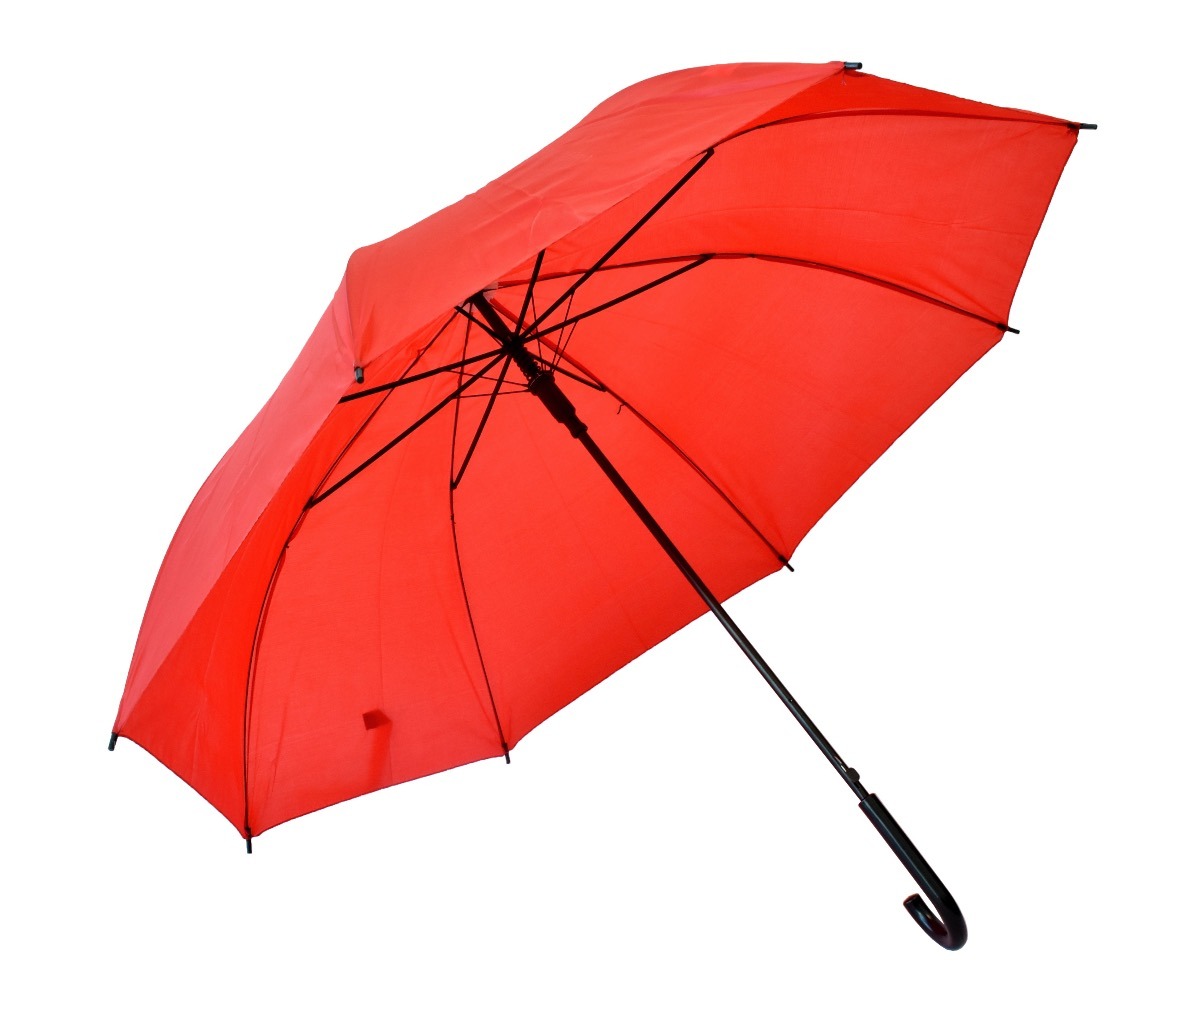 15-sombrilla-paraguas-color-rojo-88-cm-dia-precio-mayoreo-D_NQ_NP_919196-MLM26892696783_022018-F.jpg